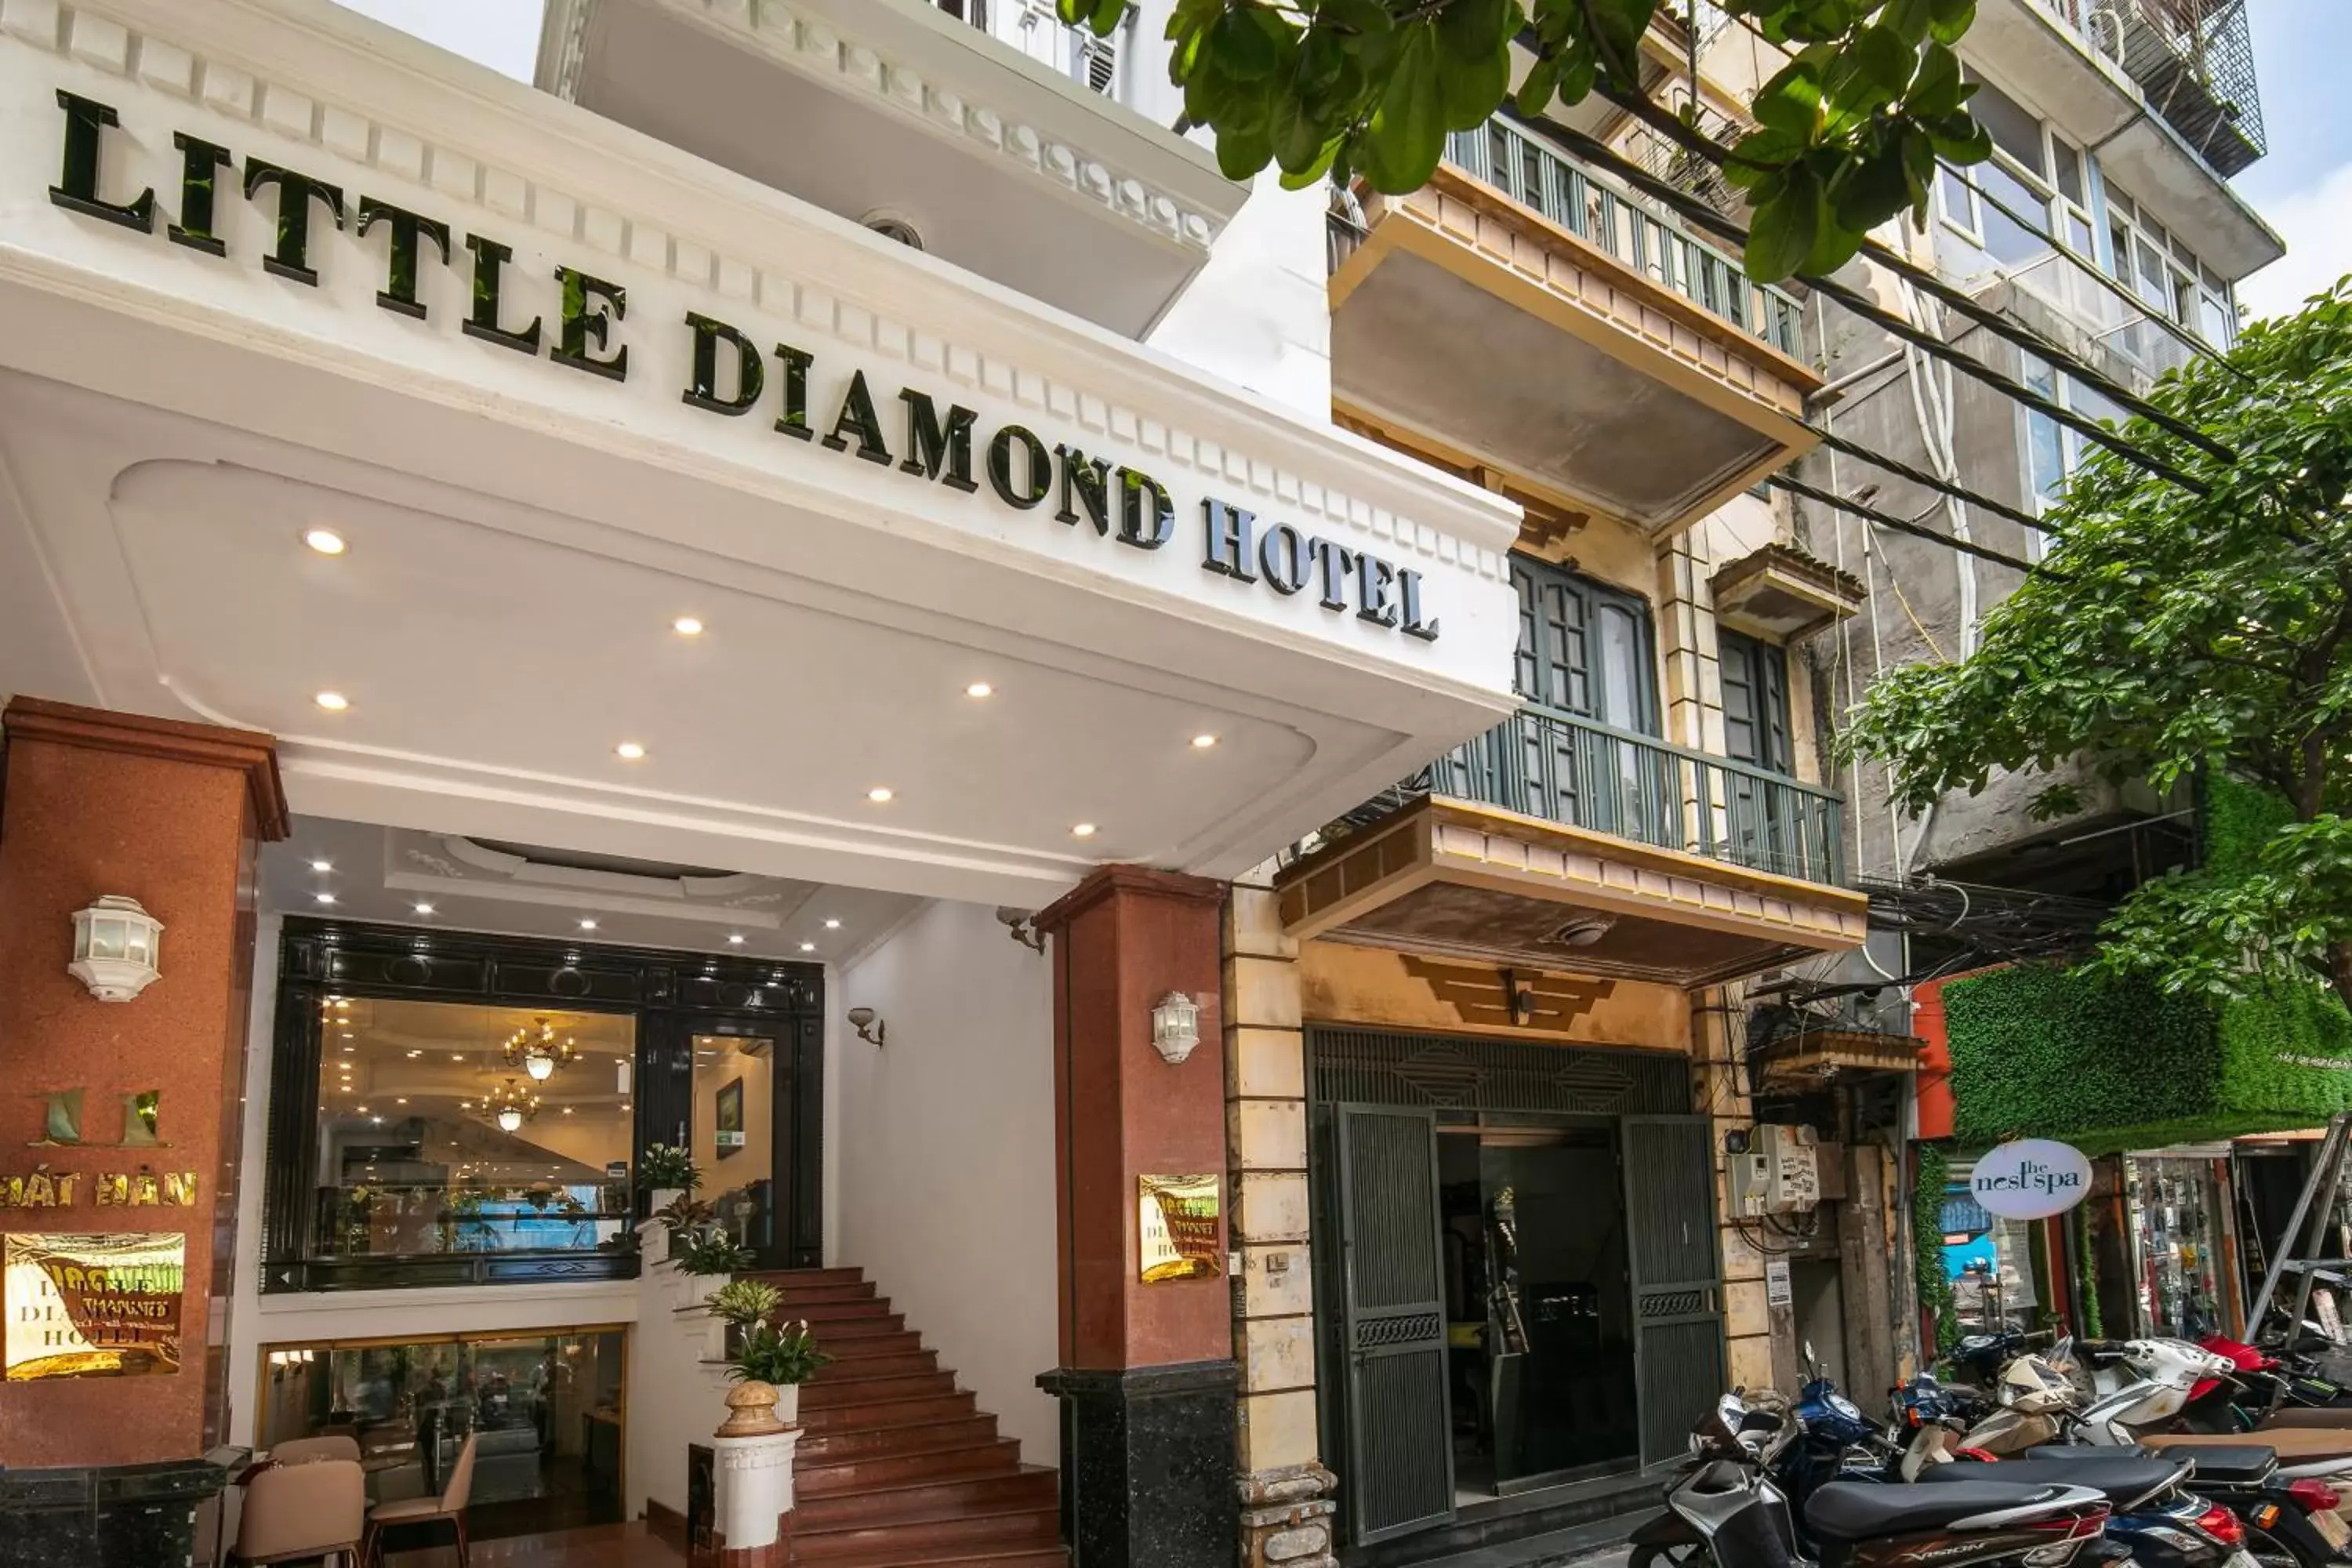 Facade/entrance in Little Diamond Hotel